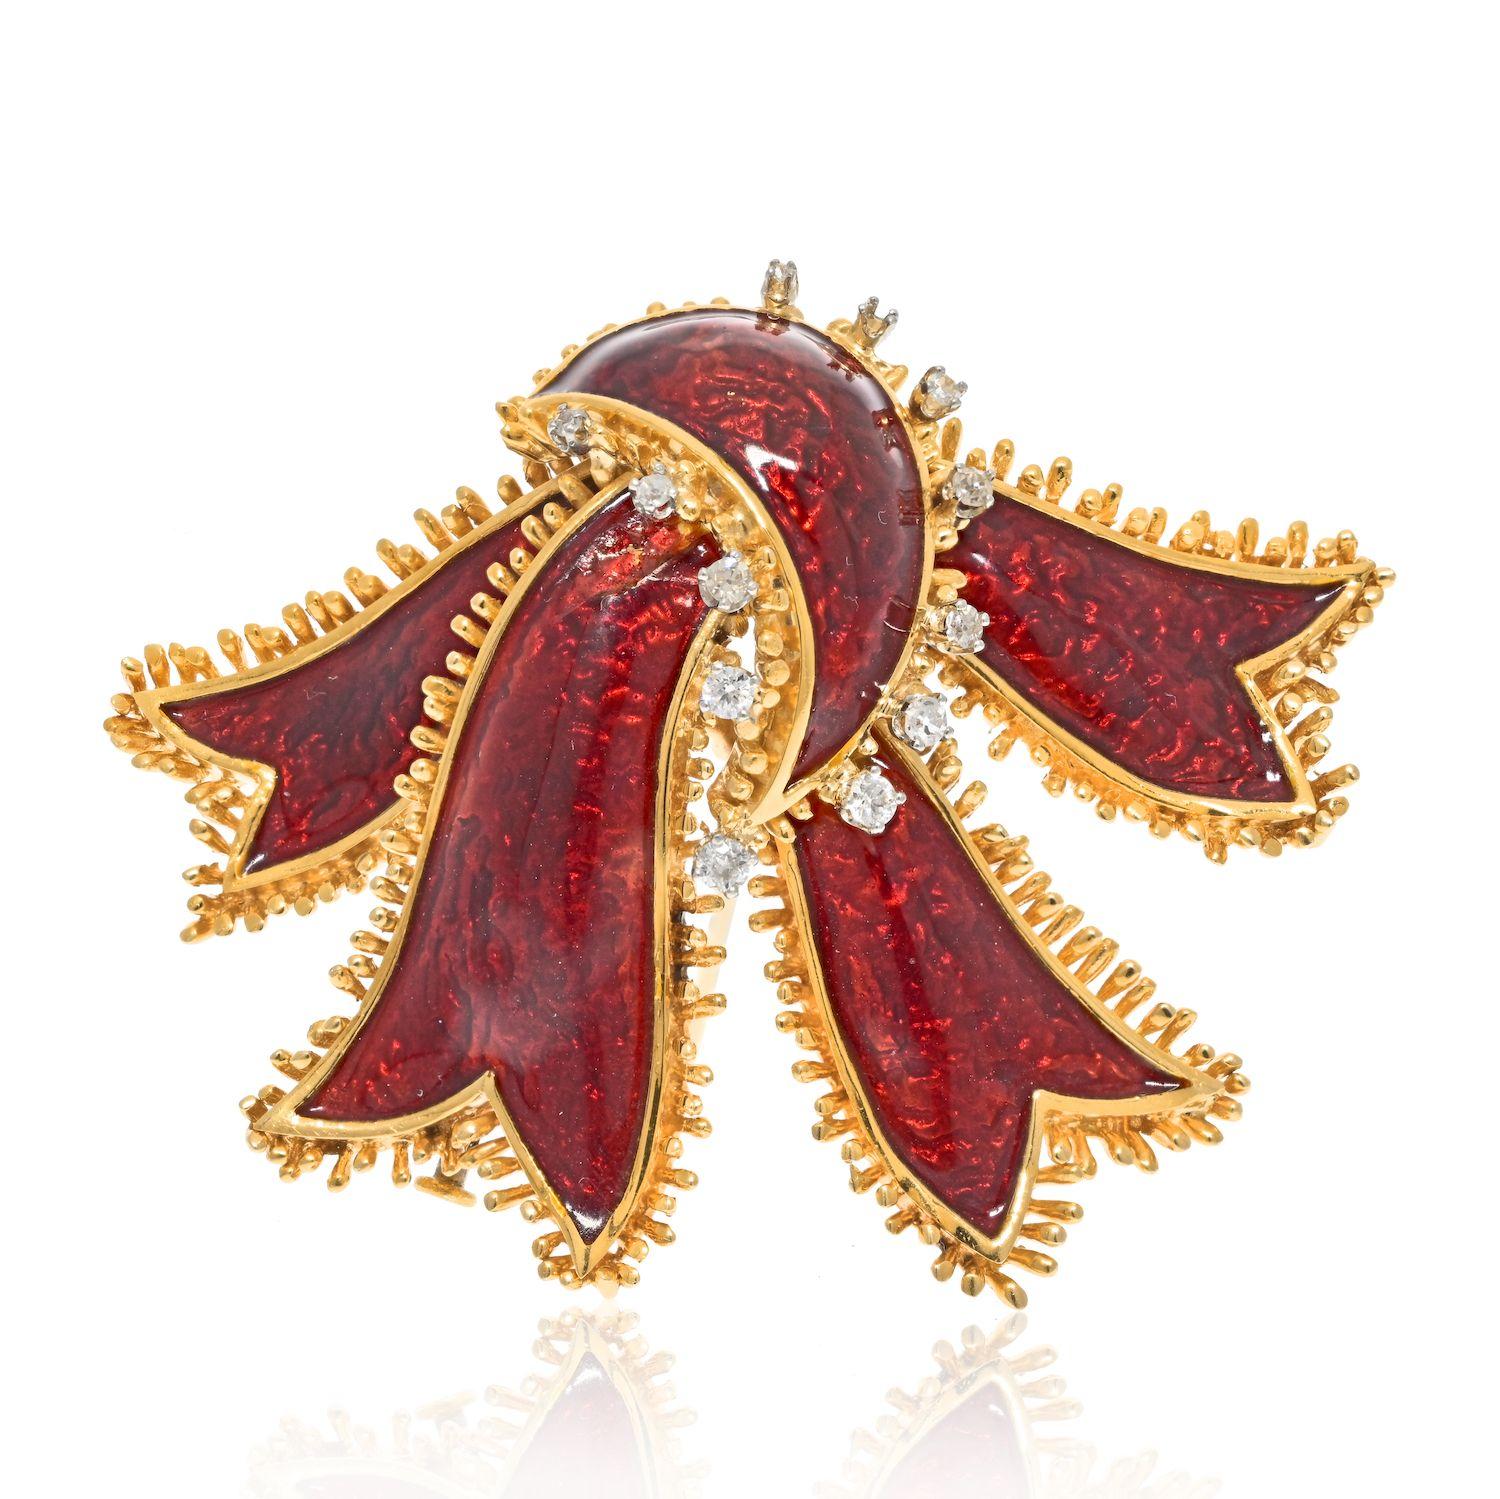 David Webb était un concepteur de bijoux magistral, créant des pièces à la fois belles et uniques. L'une de ces pièces est sa broche en or jaune 18 carats en forme de ruban, appliquée d'un émail rouge vibrant et sertie de quelques diamants ronds.